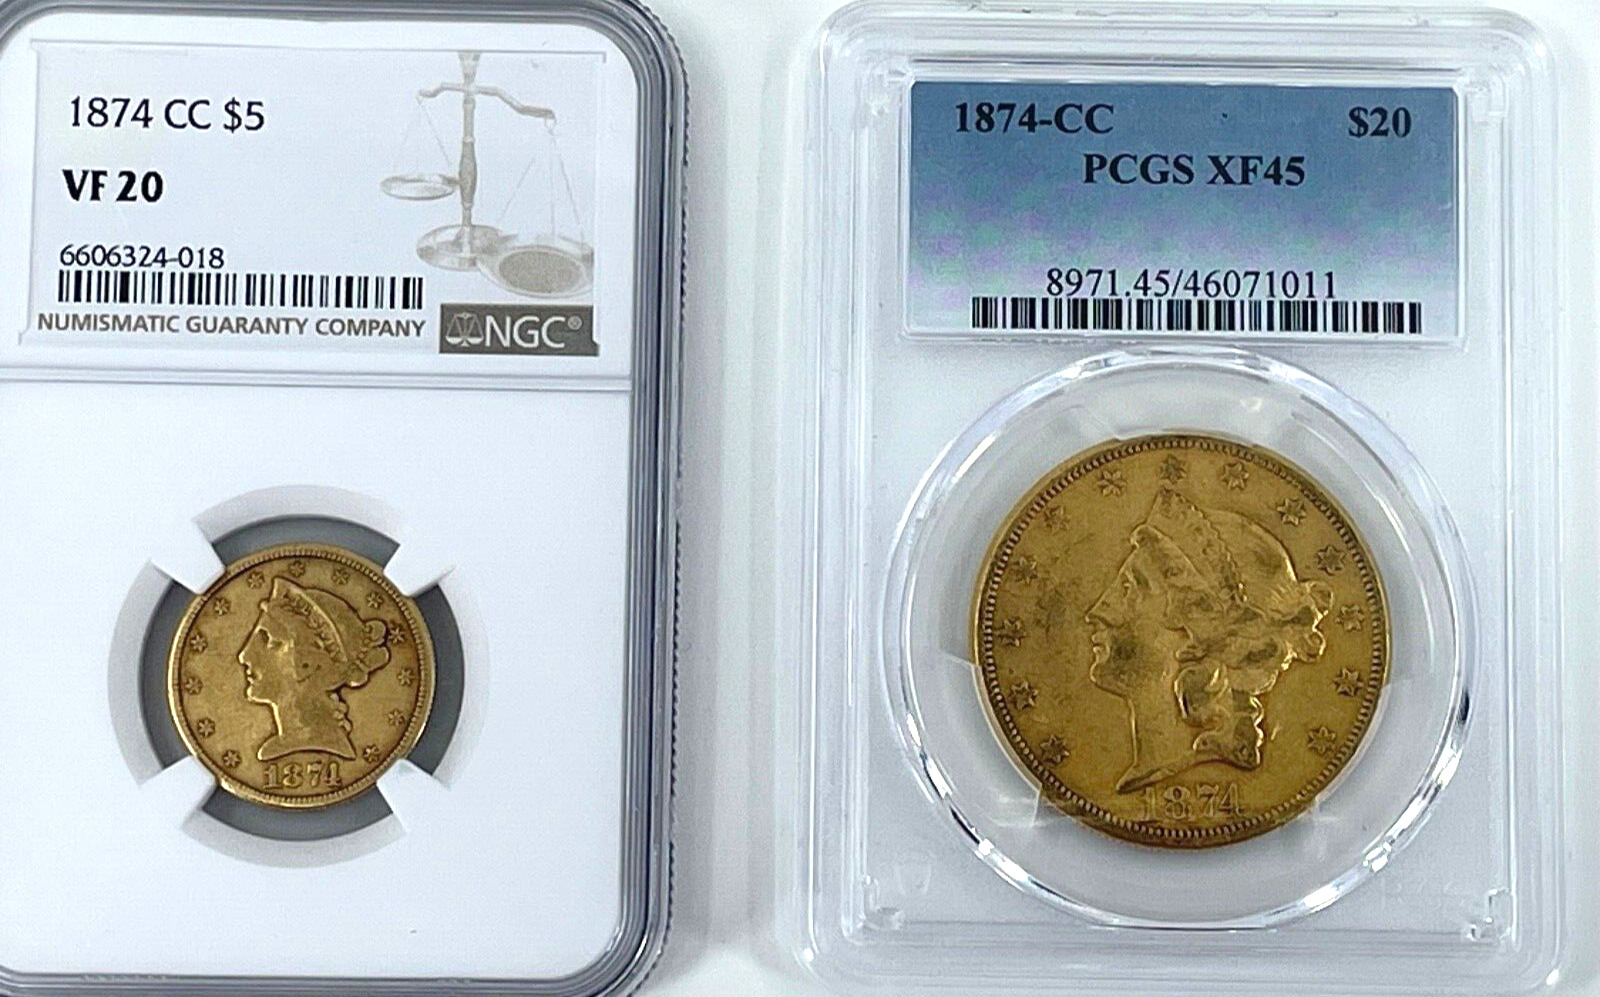 1874-CC NGC VF 20 $5 Gold, 1874-CC  PCGS XF 45 $20 Gold